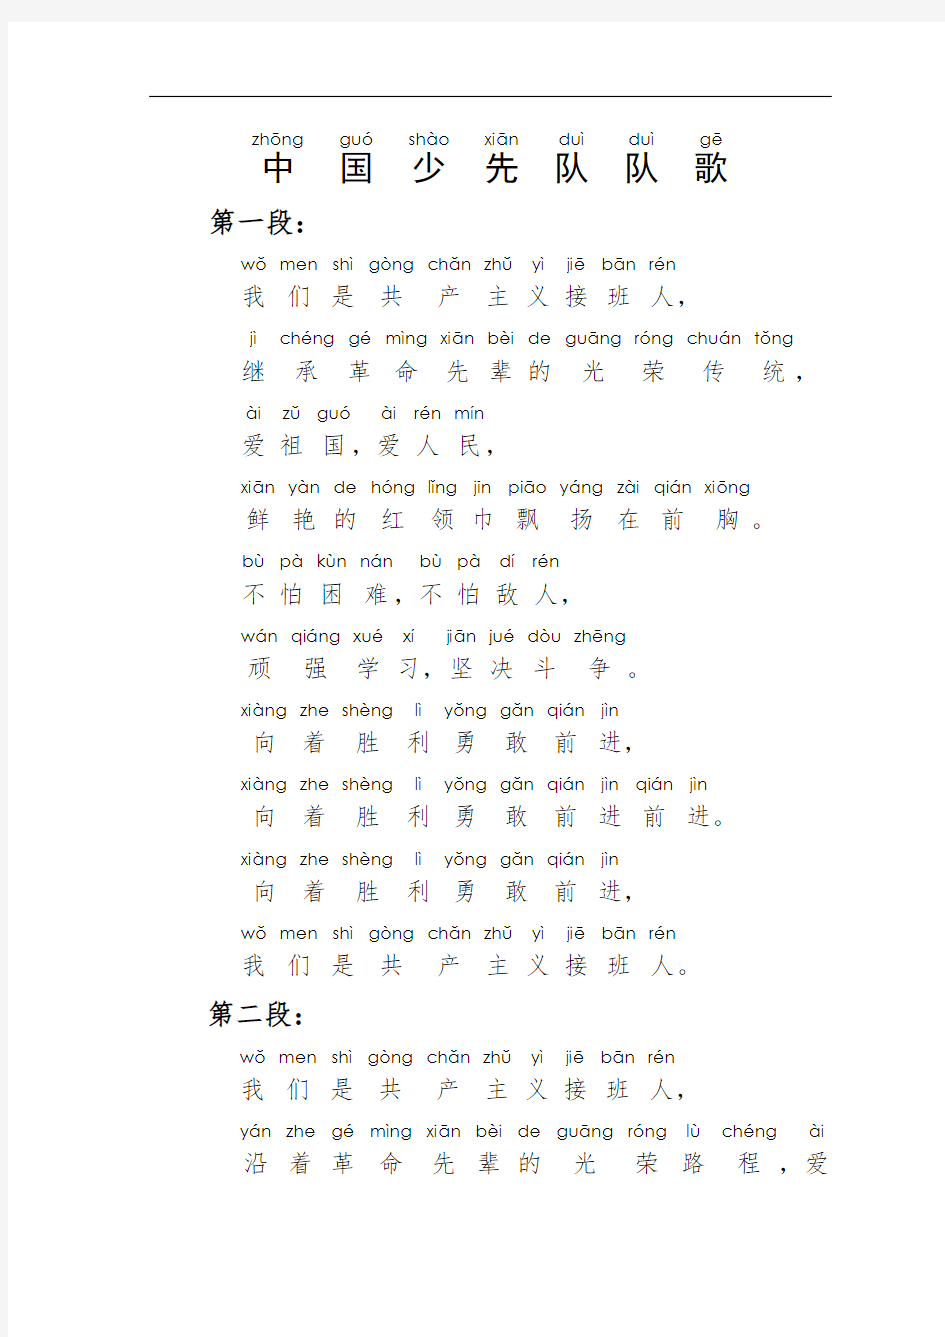 《中国少先队歌》歌词带拼音